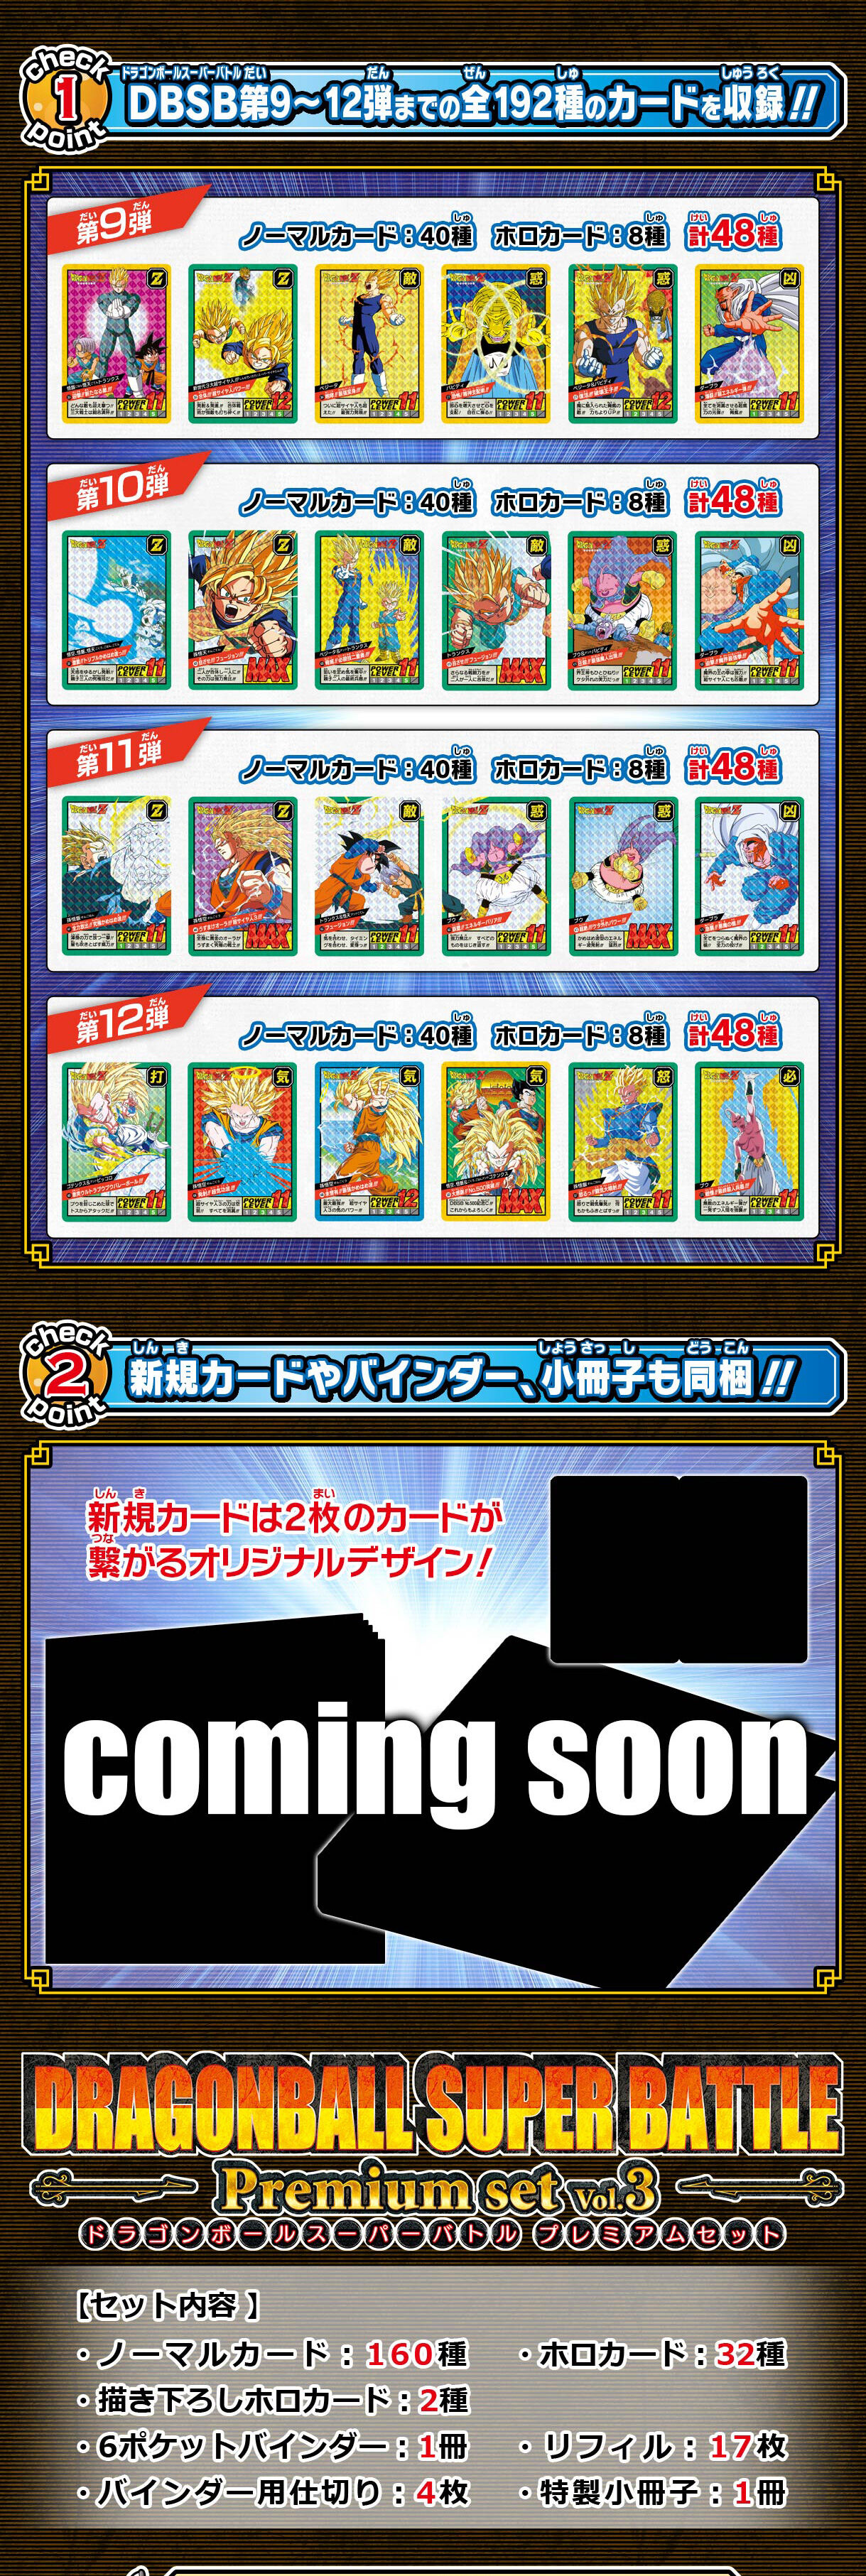 カードダス ドラゴンボール スーパーバトル Premium set Vol.3【新規